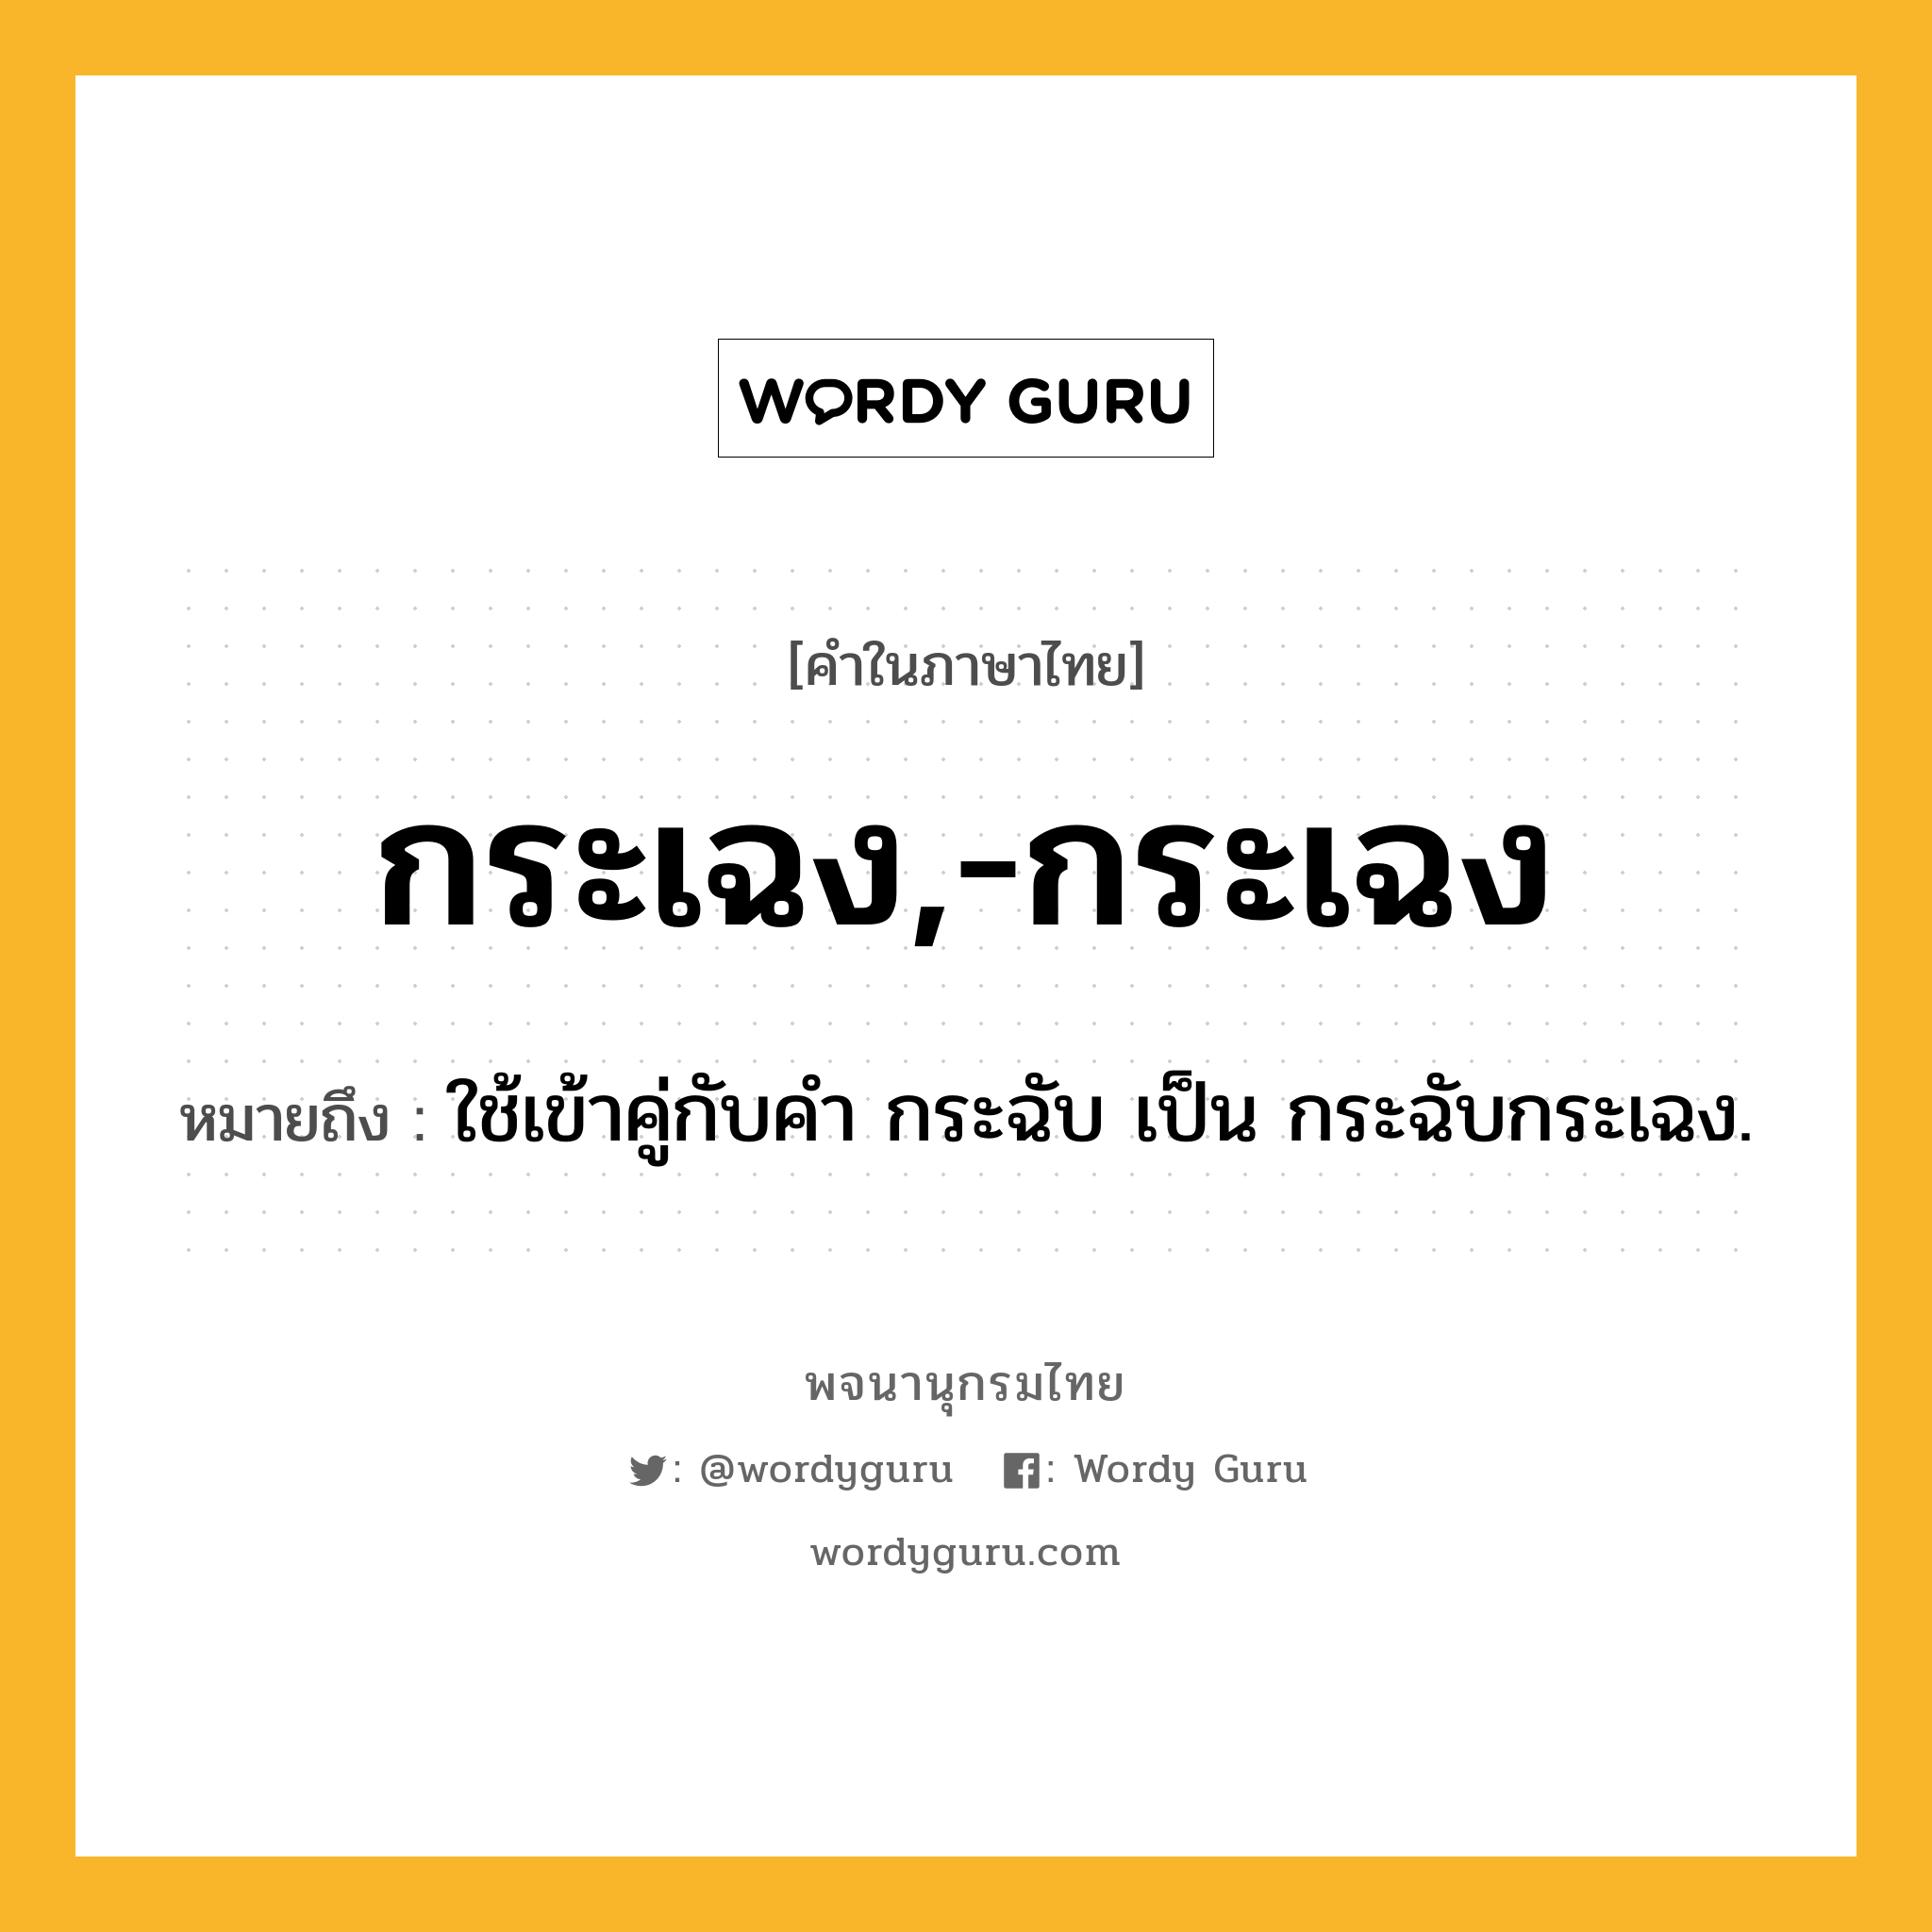 กระเฉง,-กระเฉง หมายถึงอะไร?, คำในภาษาไทย กระเฉง,-กระเฉง หมายถึง ใช้เข้าคู่กับคํา กระฉับ เป็น กระฉับกระเฉง.